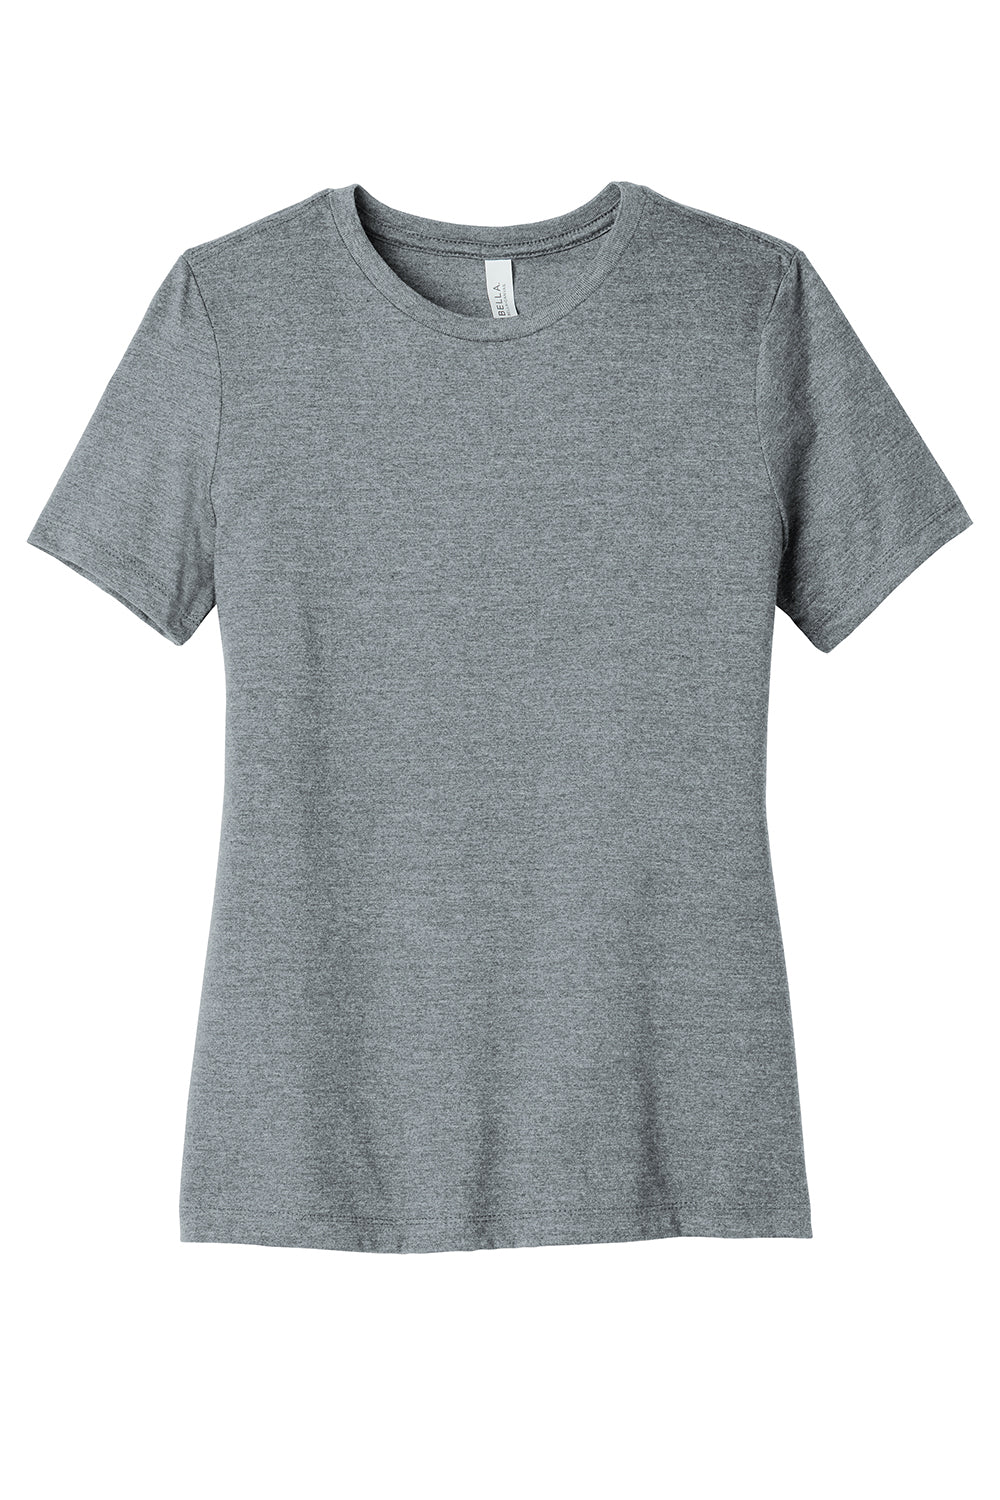 Bella + Canvas BC6400CVC/6400CVC Womens CVC Short Sleeve Crewneck T-Shirt Heather Grey Flat Front